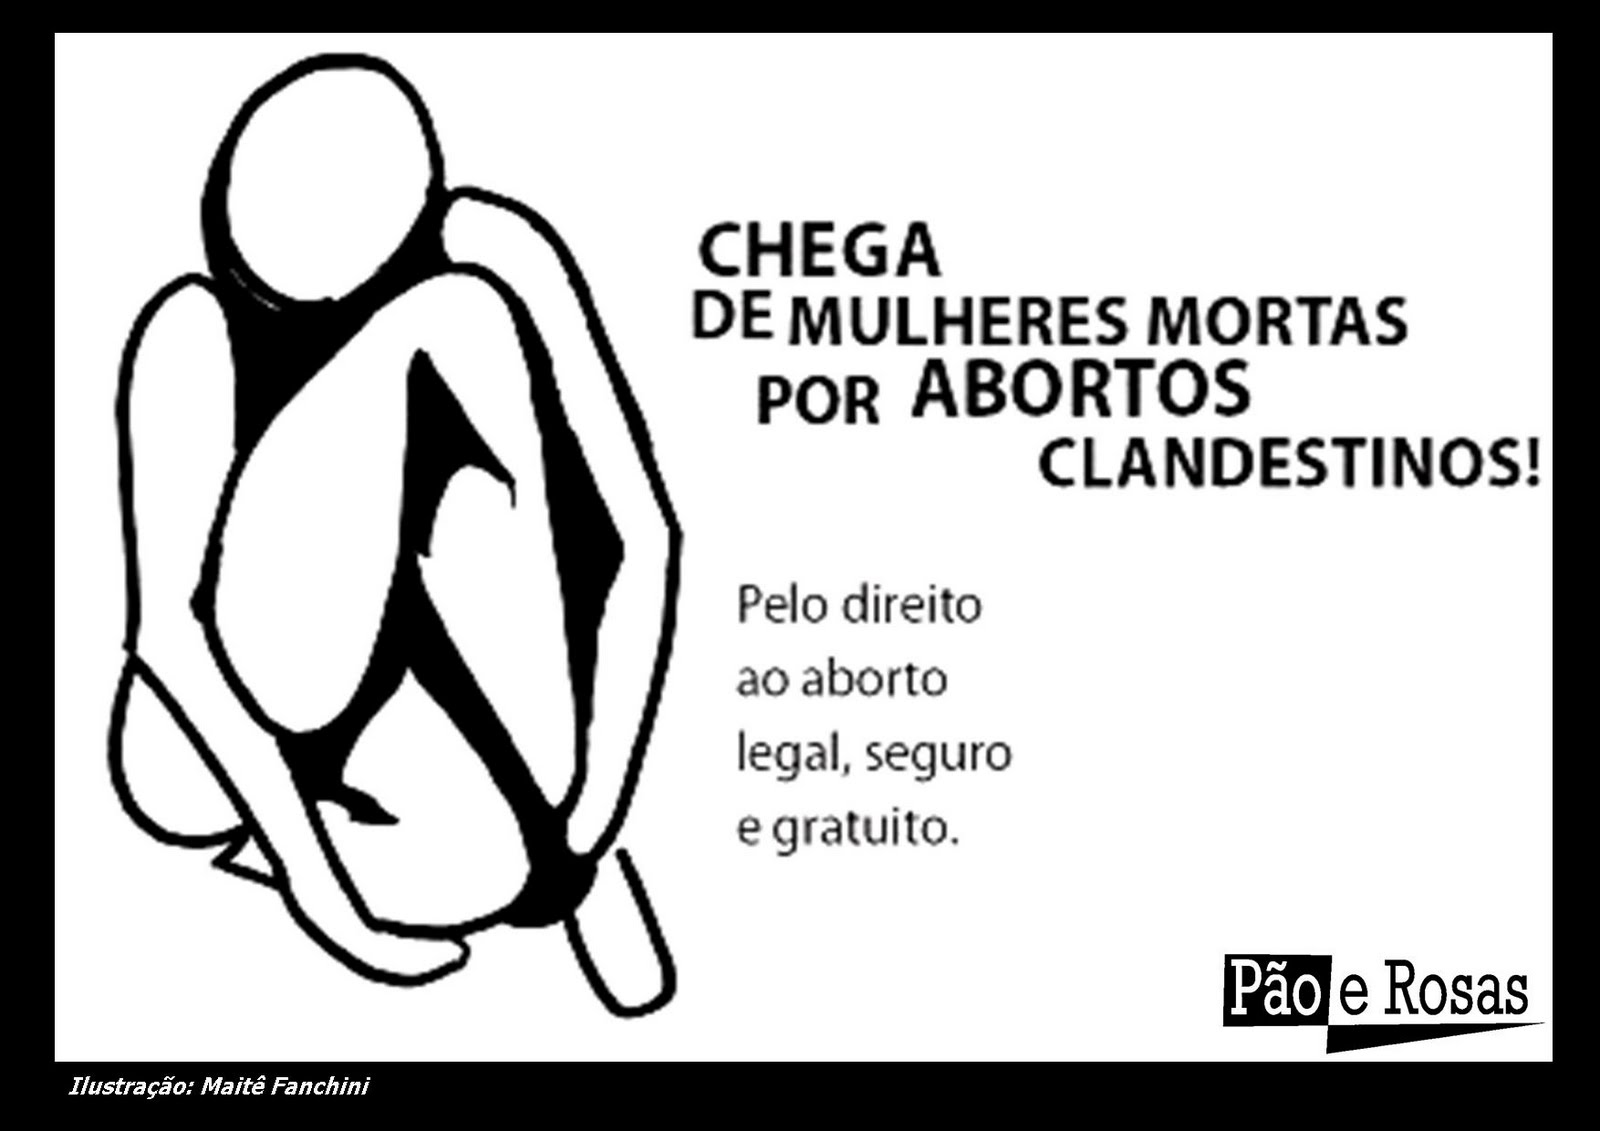 Quantas Jandiras mais?! Direito ao aborto legal seguro e gratuito já!